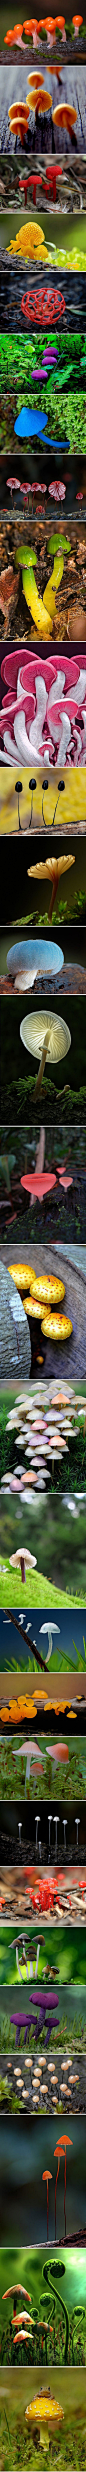 【爆萌】你真的认识蘑菇？ - 吃货研究所小组 - 果壳网 guokr.com